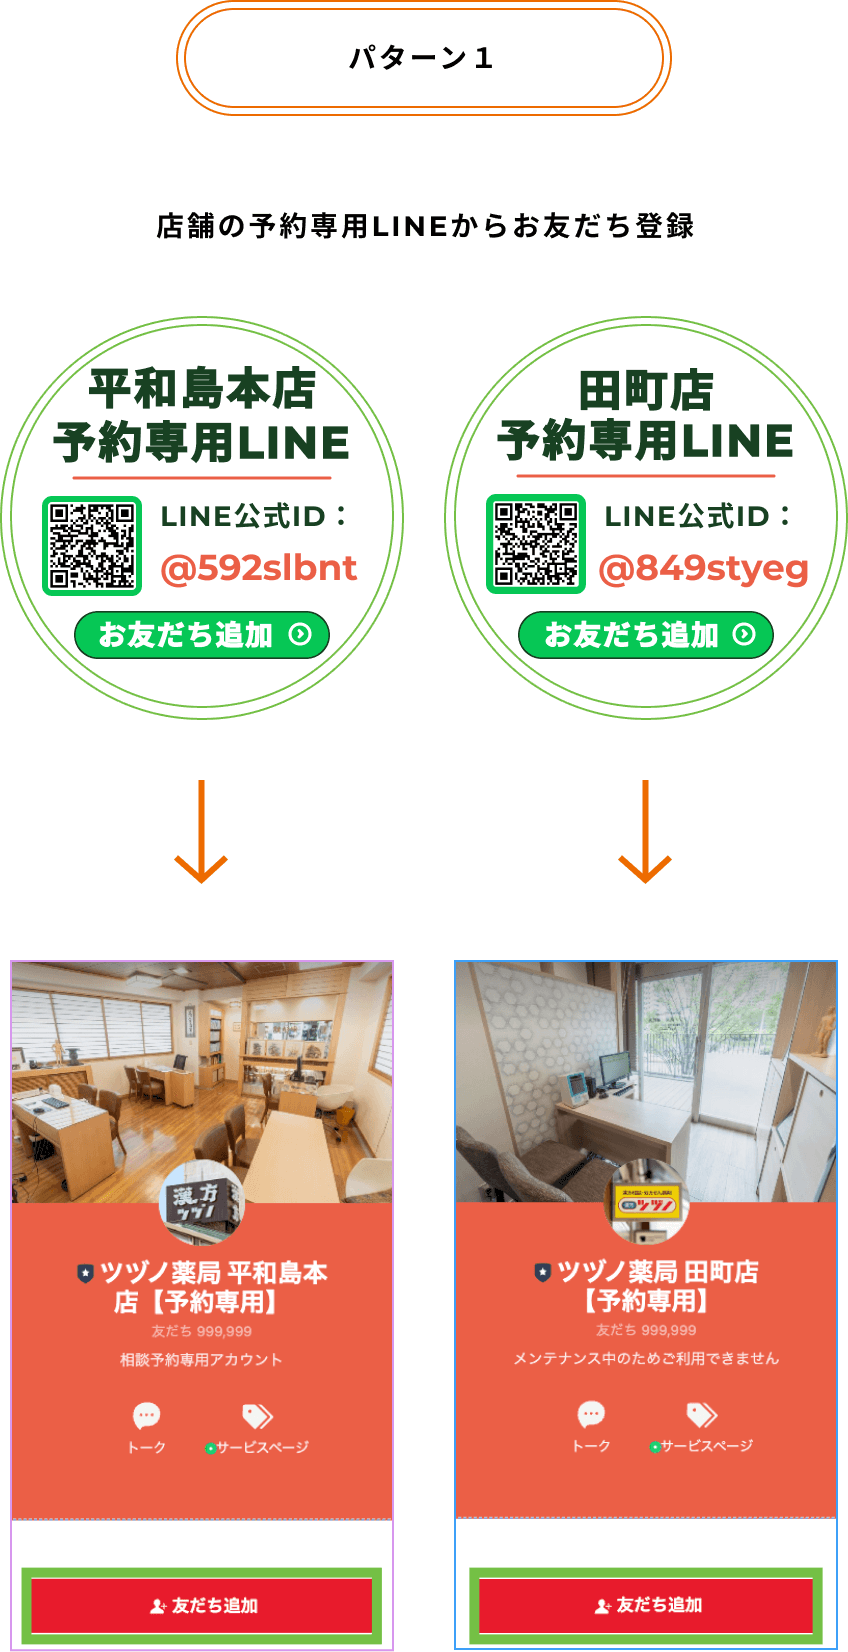 手順1 漢方ツヅノ薬局の漢方相談をLINEから予約する方法1 店舗の予約専用LINE公式をお友だち登録する手順を説明している画像